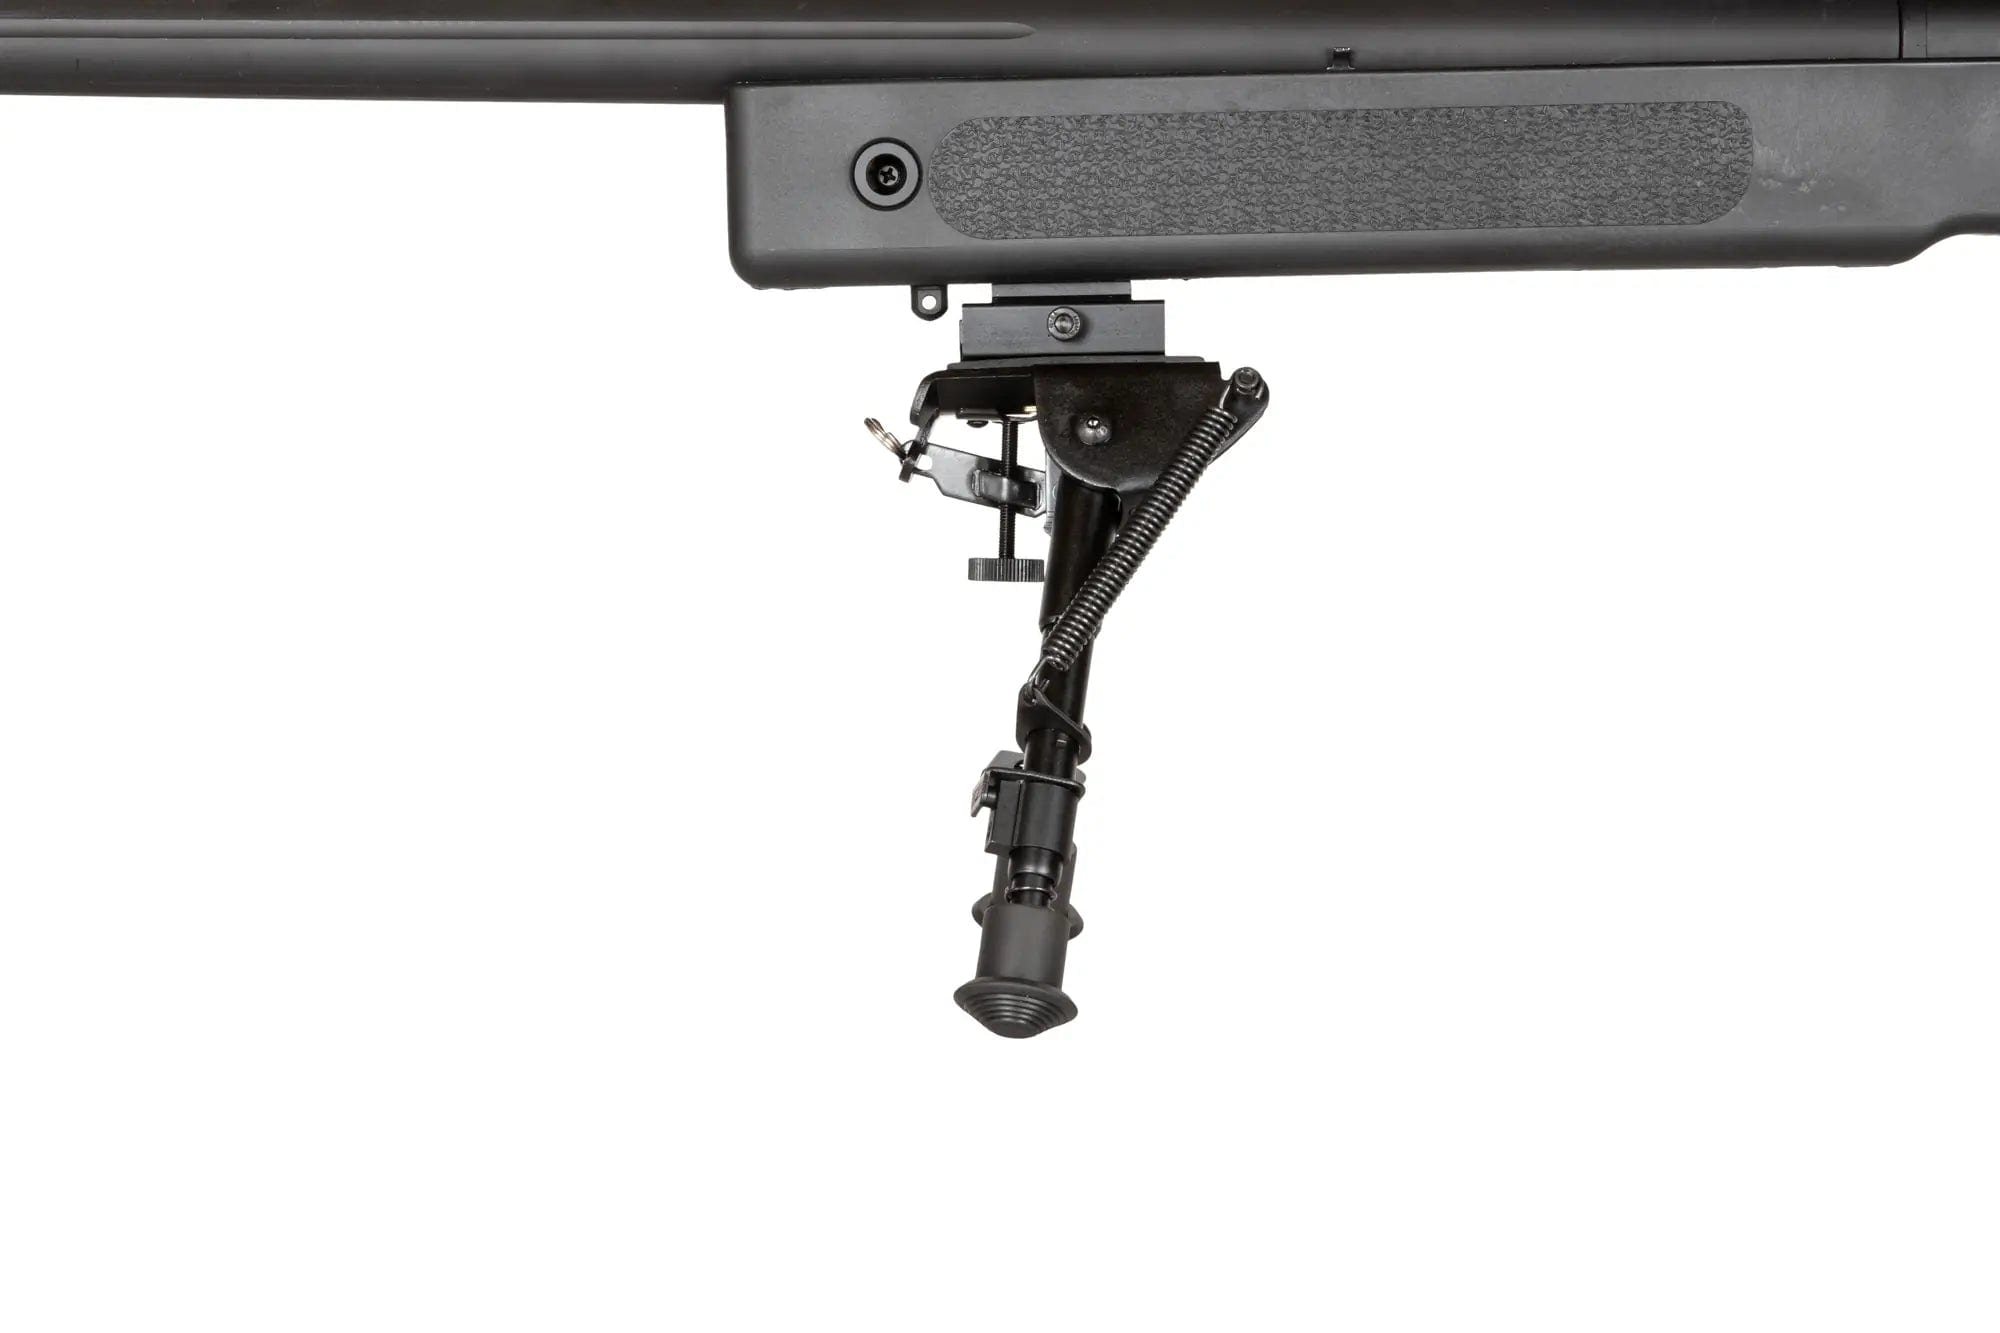 SA-S02 CORE High Velocity Sniper Rifle + Scope and Bipod - Black